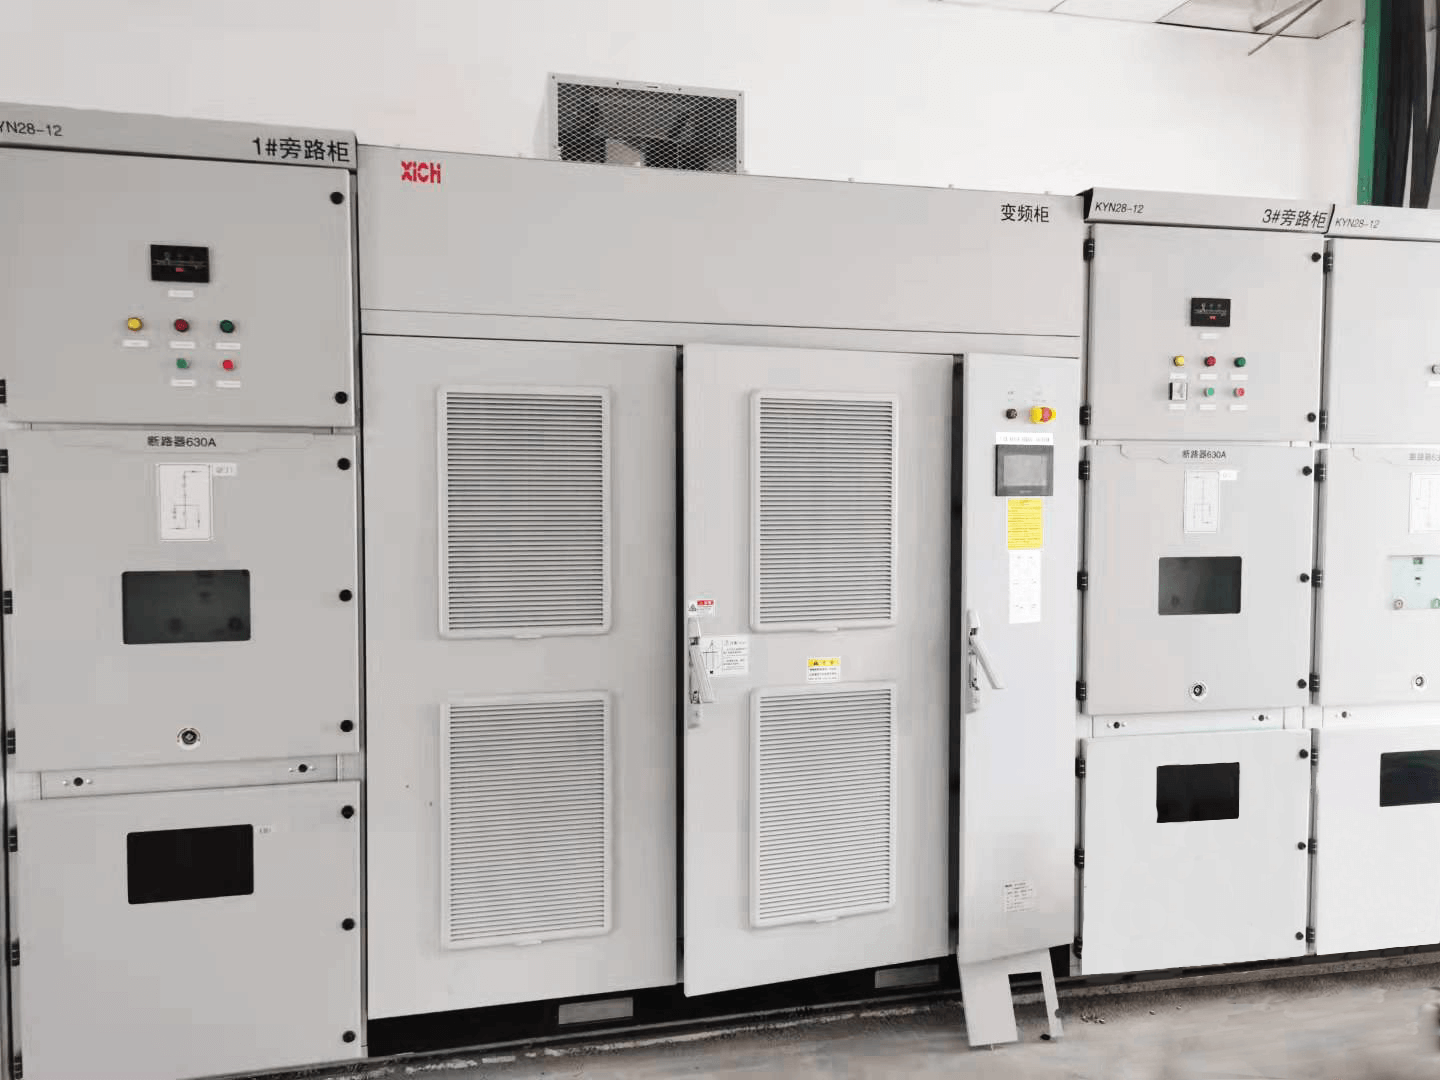 Производитель привода переменного тока-XiChiElectric